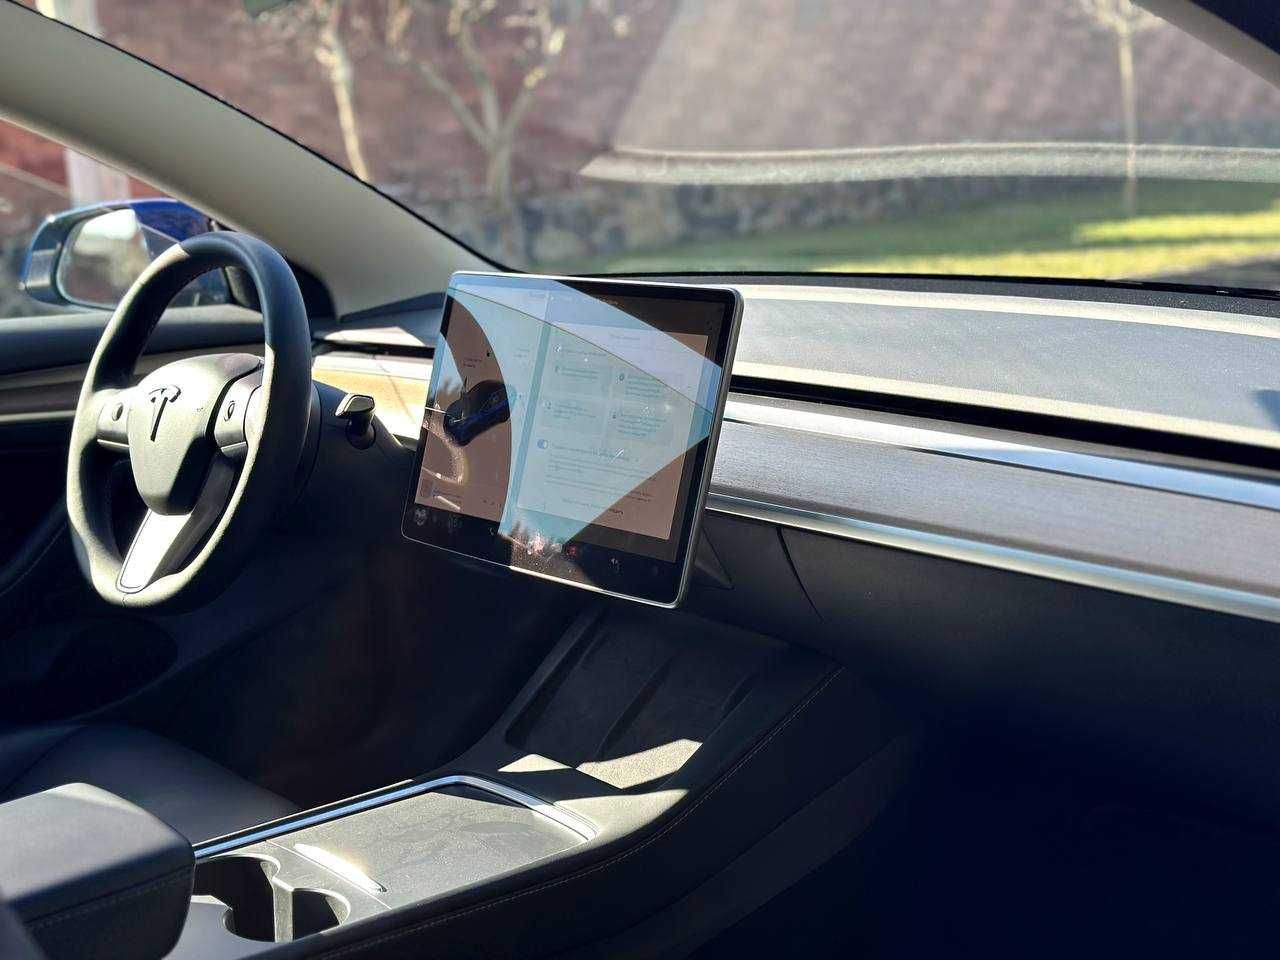 Авто в наявності Tesla Model 3 Performance 80.5kWh 2022 року